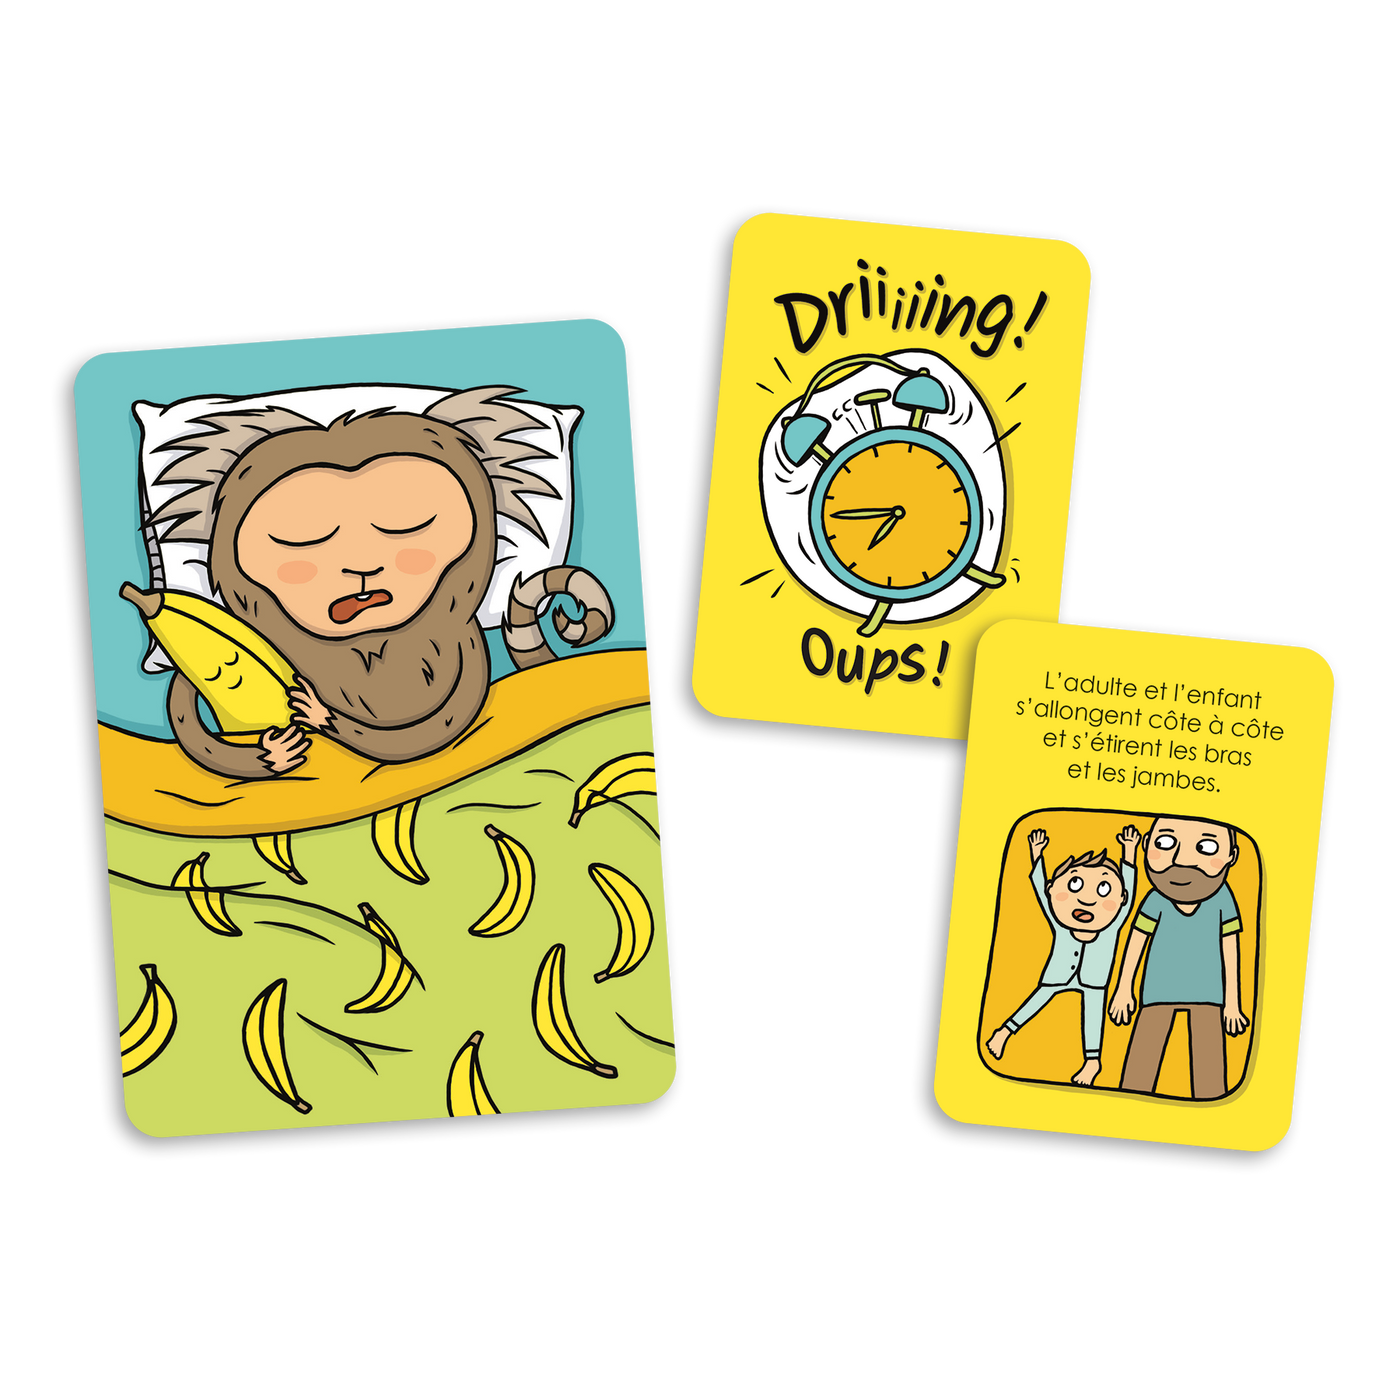 Au lit ouistitis! - Exemples de cartes : carte-ouistiti, carte « Oups! » et carte-action (s’allonger et étirer bas et jambes)